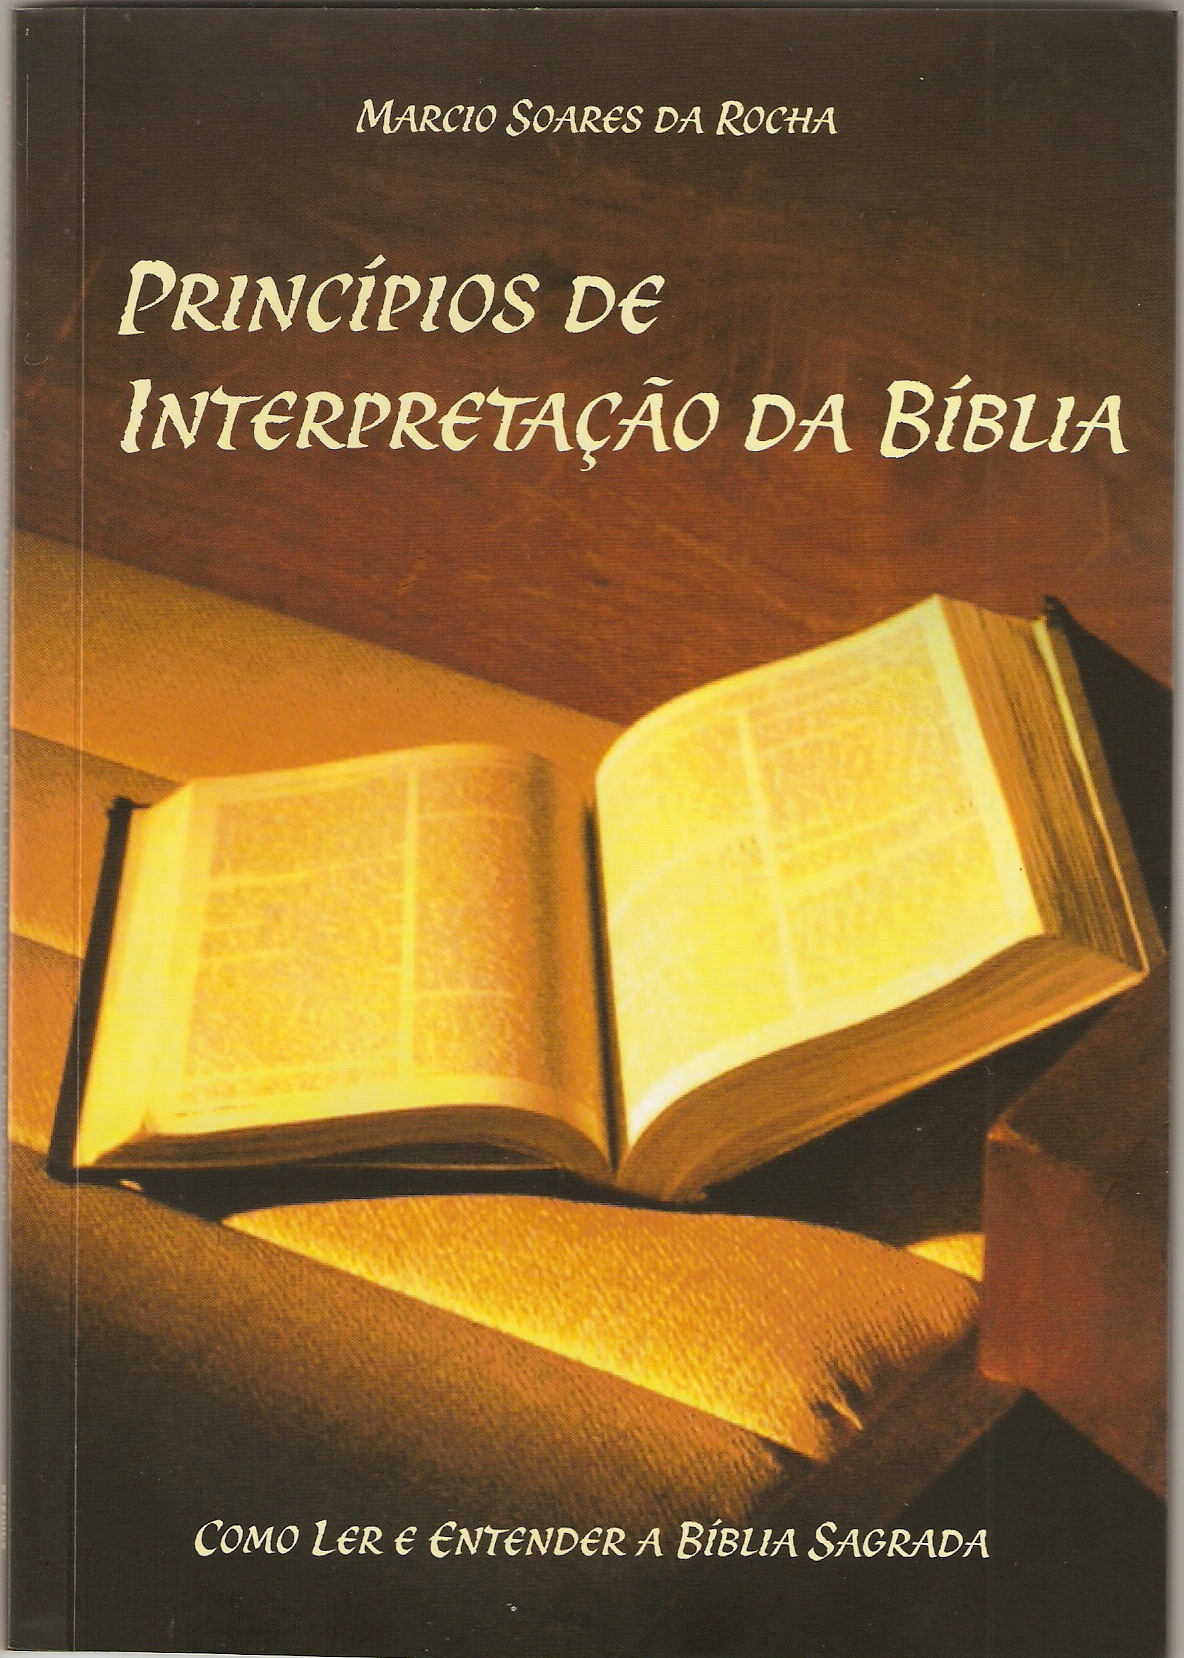 Livro “Princípios de Interpretação da Bíblia”, agora à venda pela Bookstant.com